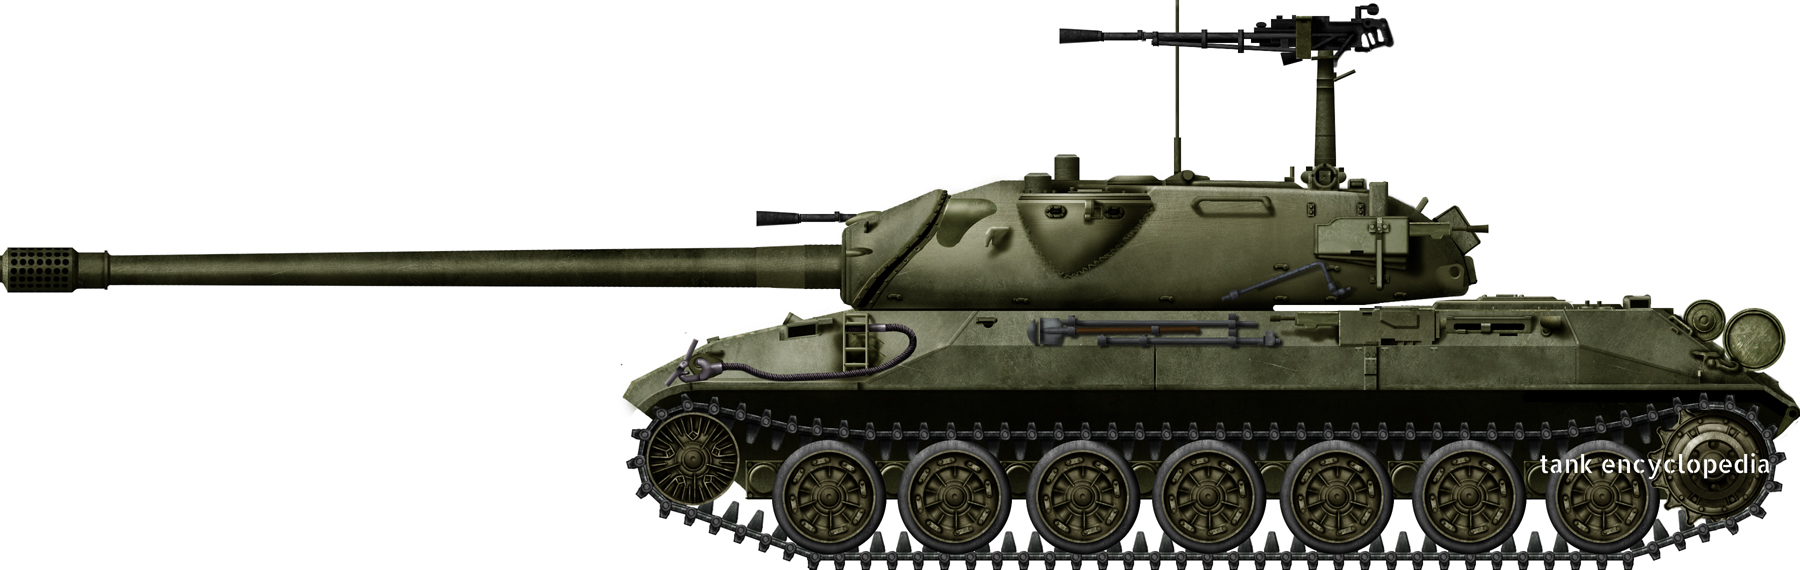 Is 7 Object 260 Heavy Tank Tanks Encyclopedia